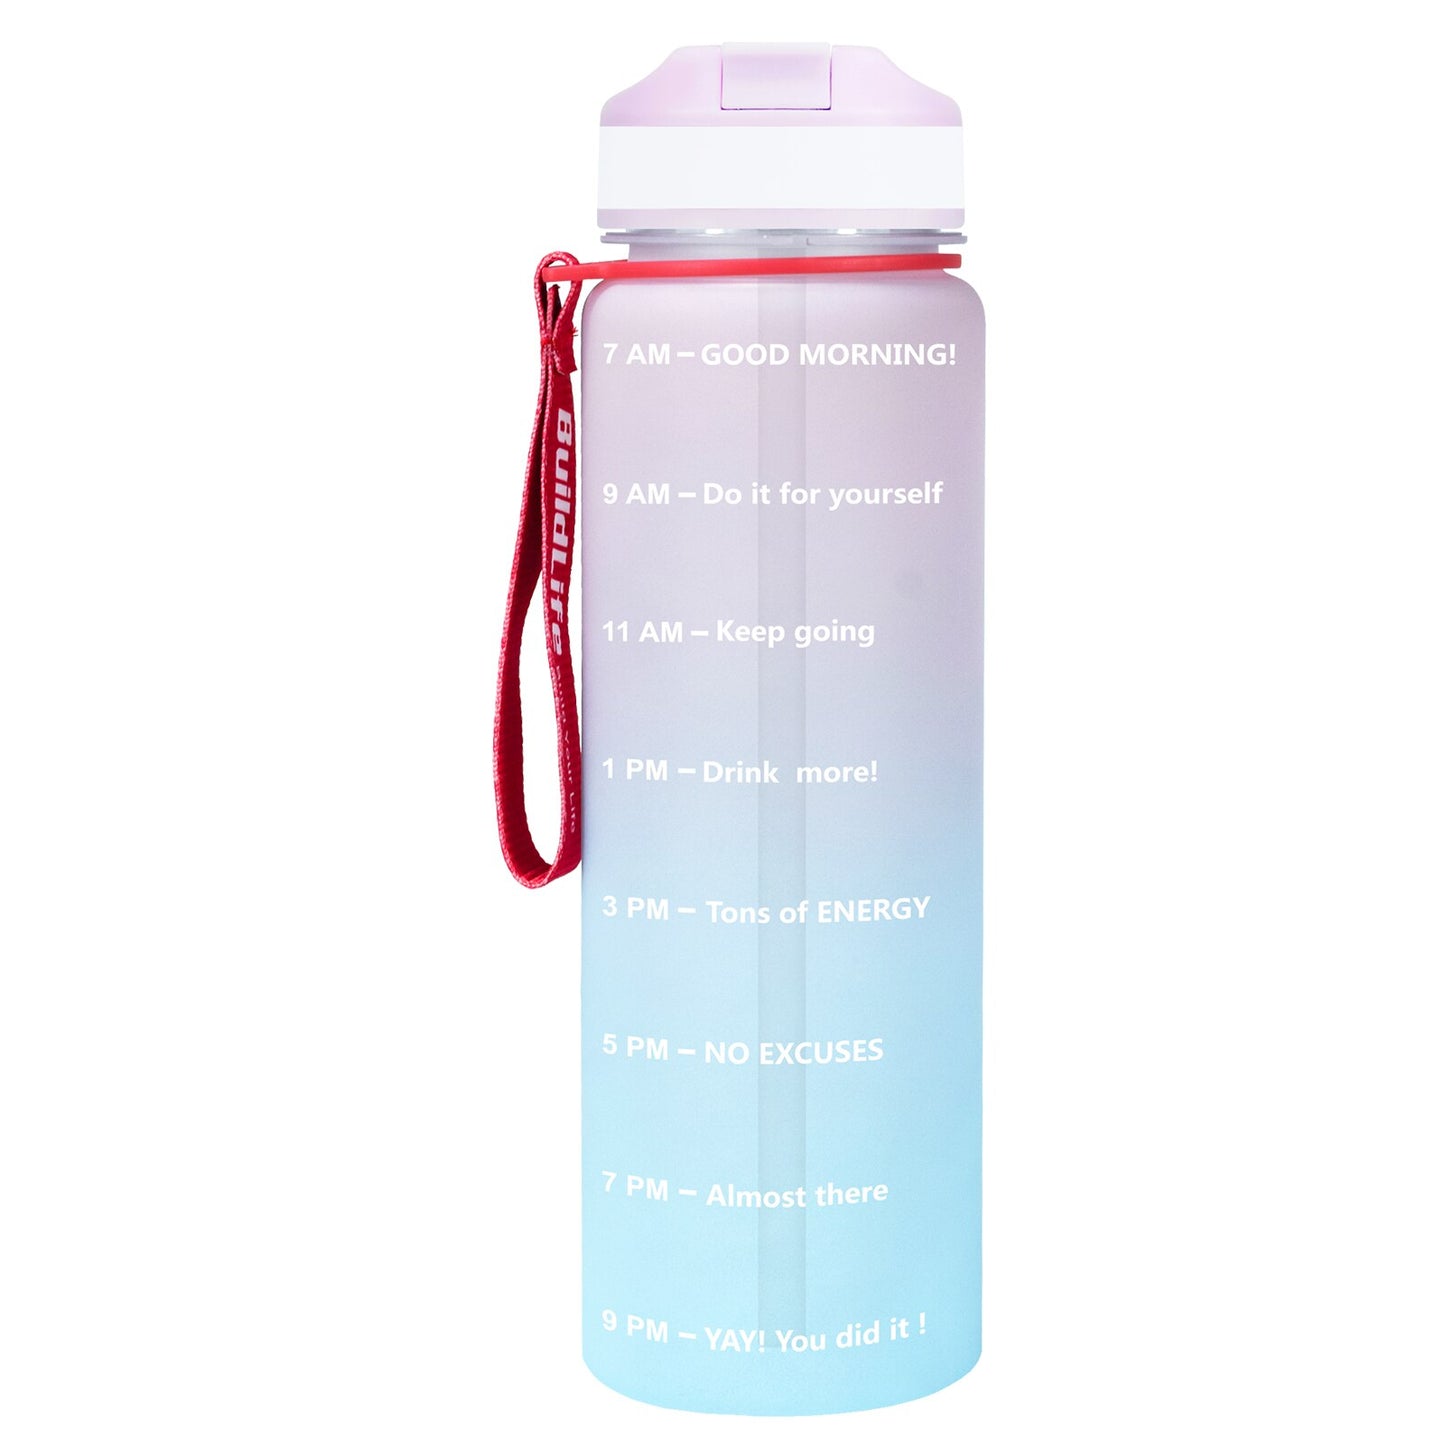 Eine pink-blaue Sporttrinkflasche mit einer Zeitmarkierungen sowie motivierenden Spruechen für verschiedene Tageszeiten. Die Flasche hat eine rote Trageschlaufe und einen Deckel mit einem aufklappbaren Trinkverschluss.